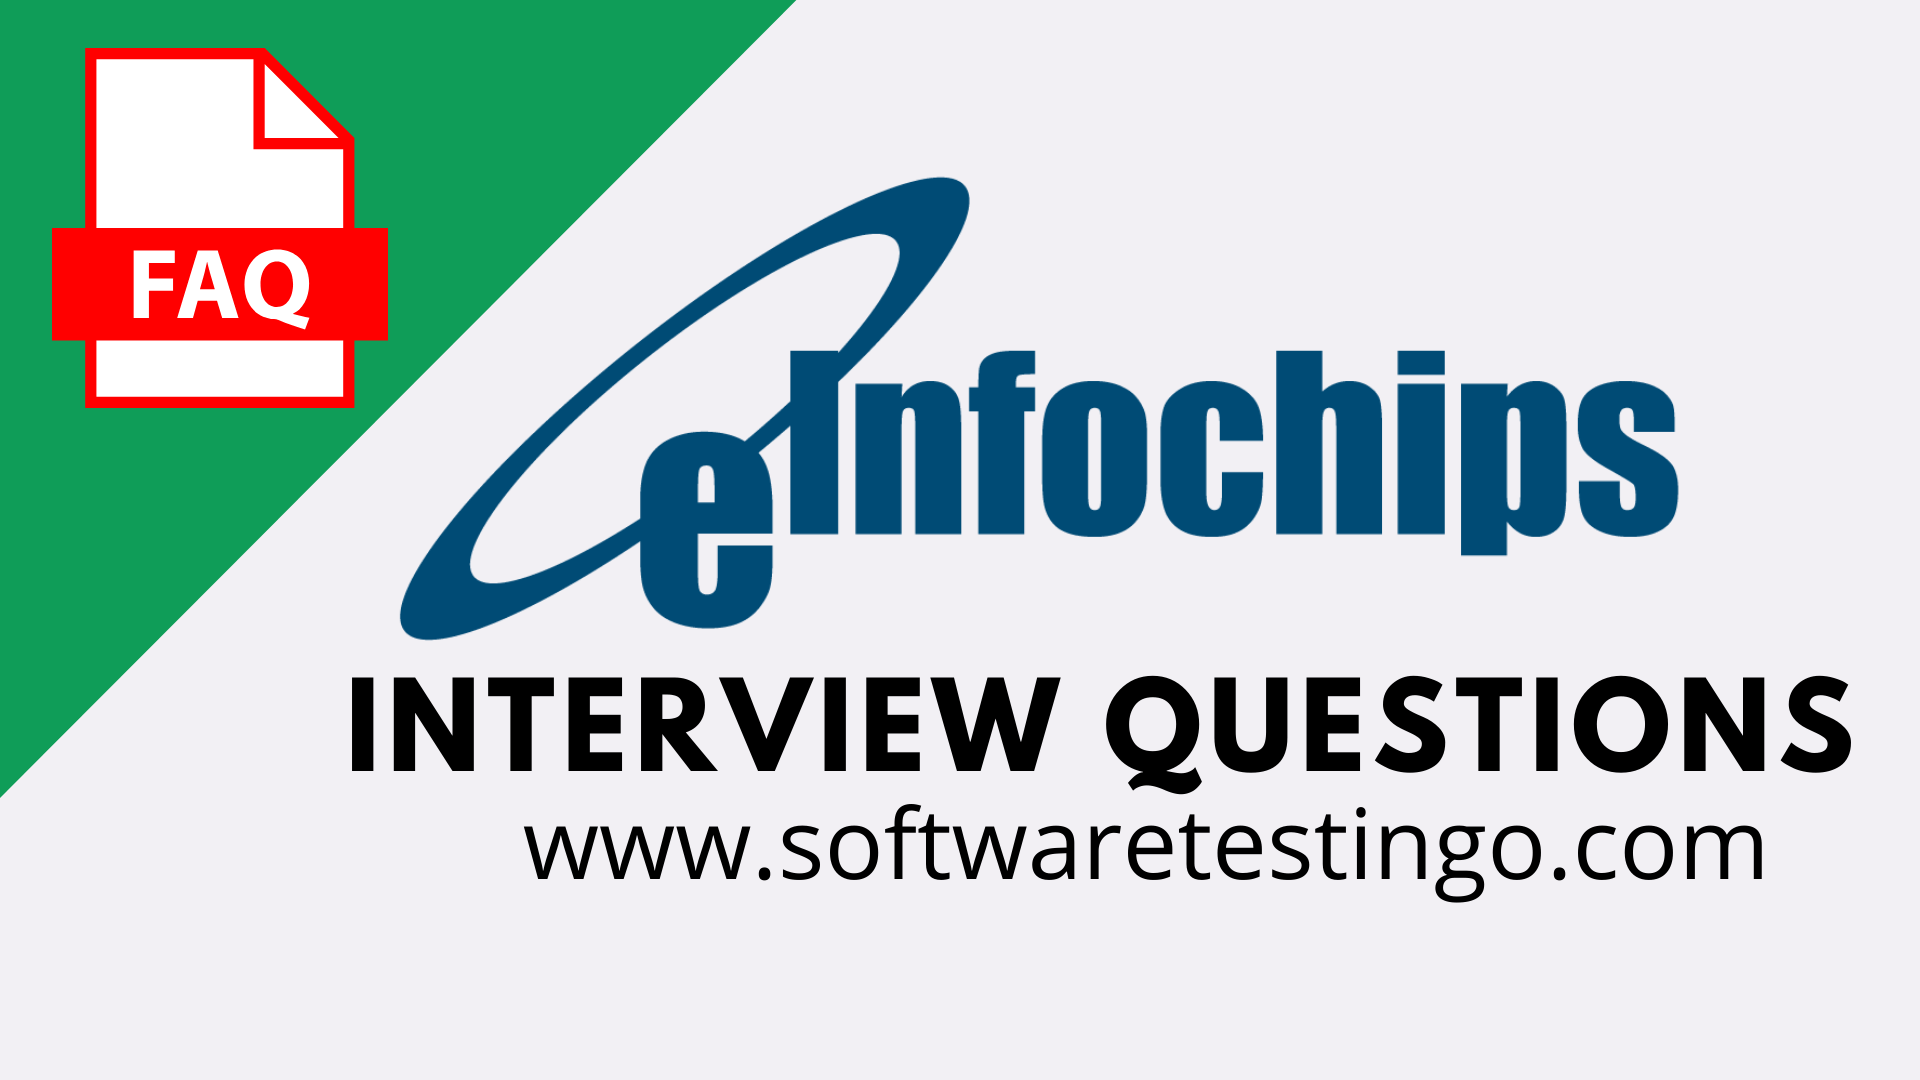 Einfochips Interview Questions